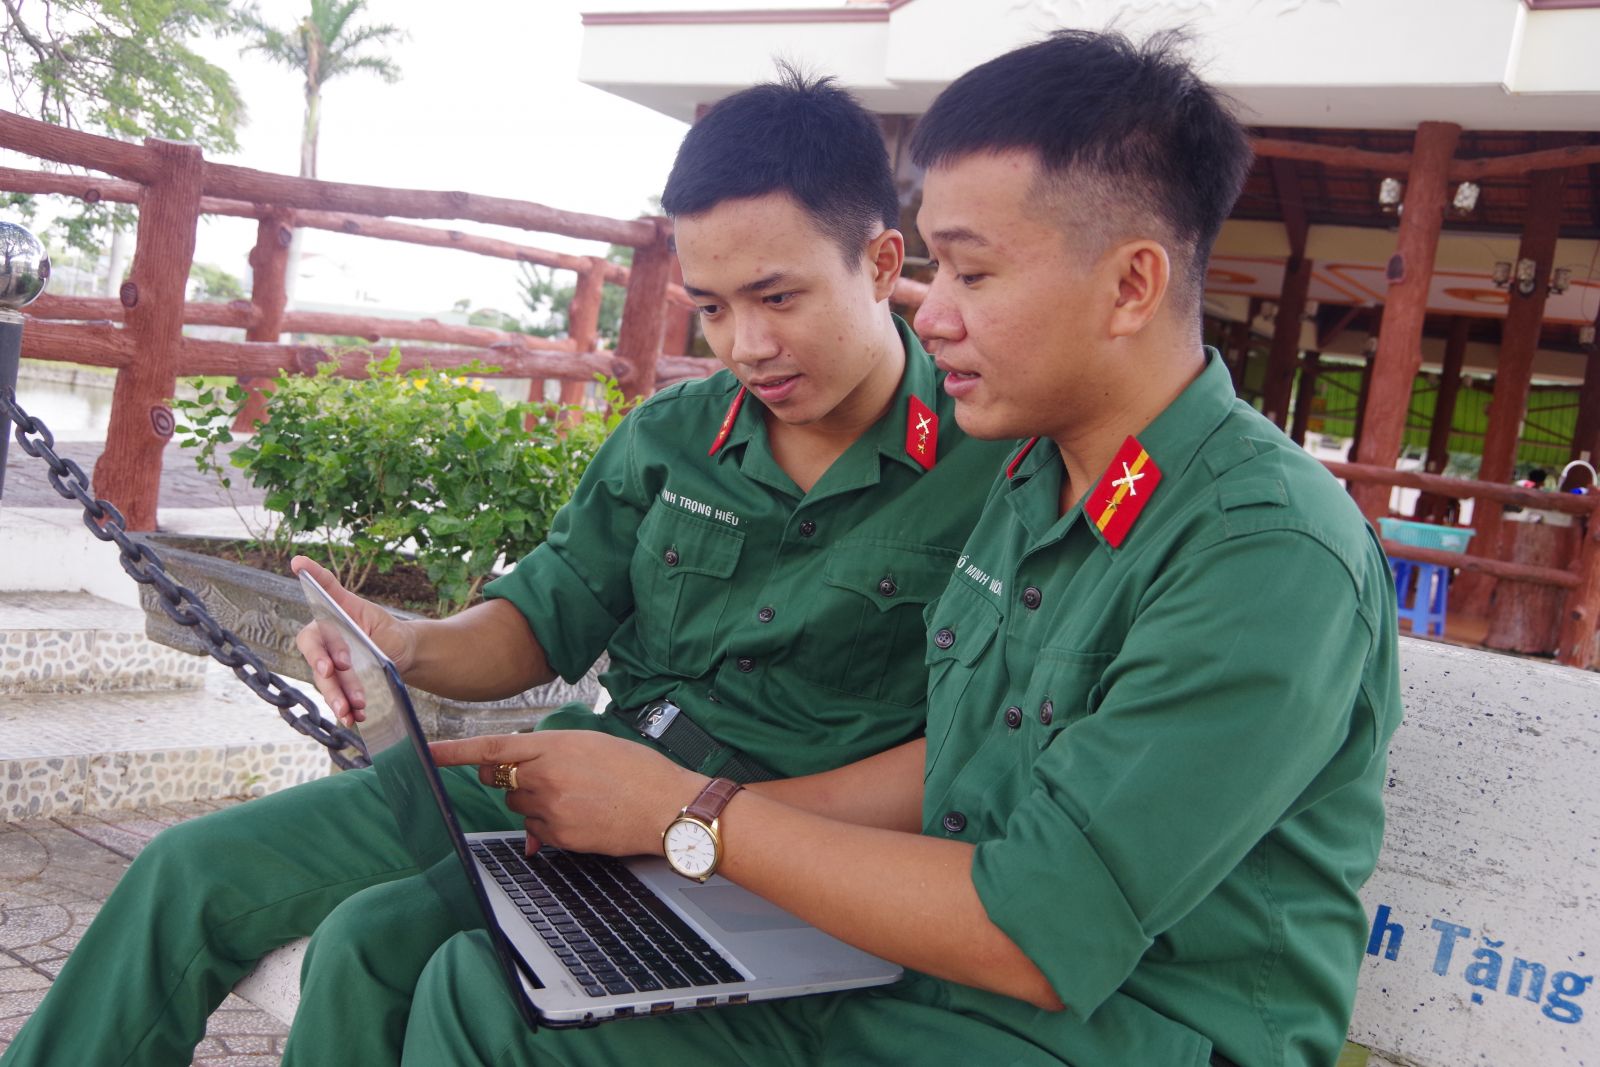 Trung sĩ Hồ Minh Vương (bên phải) và binh nhất Huỳnh Trọng Hiếu cùng trao đổi, hỗ trợ kiến thức ngoại ngữ và công nghệ thông tin với nhau